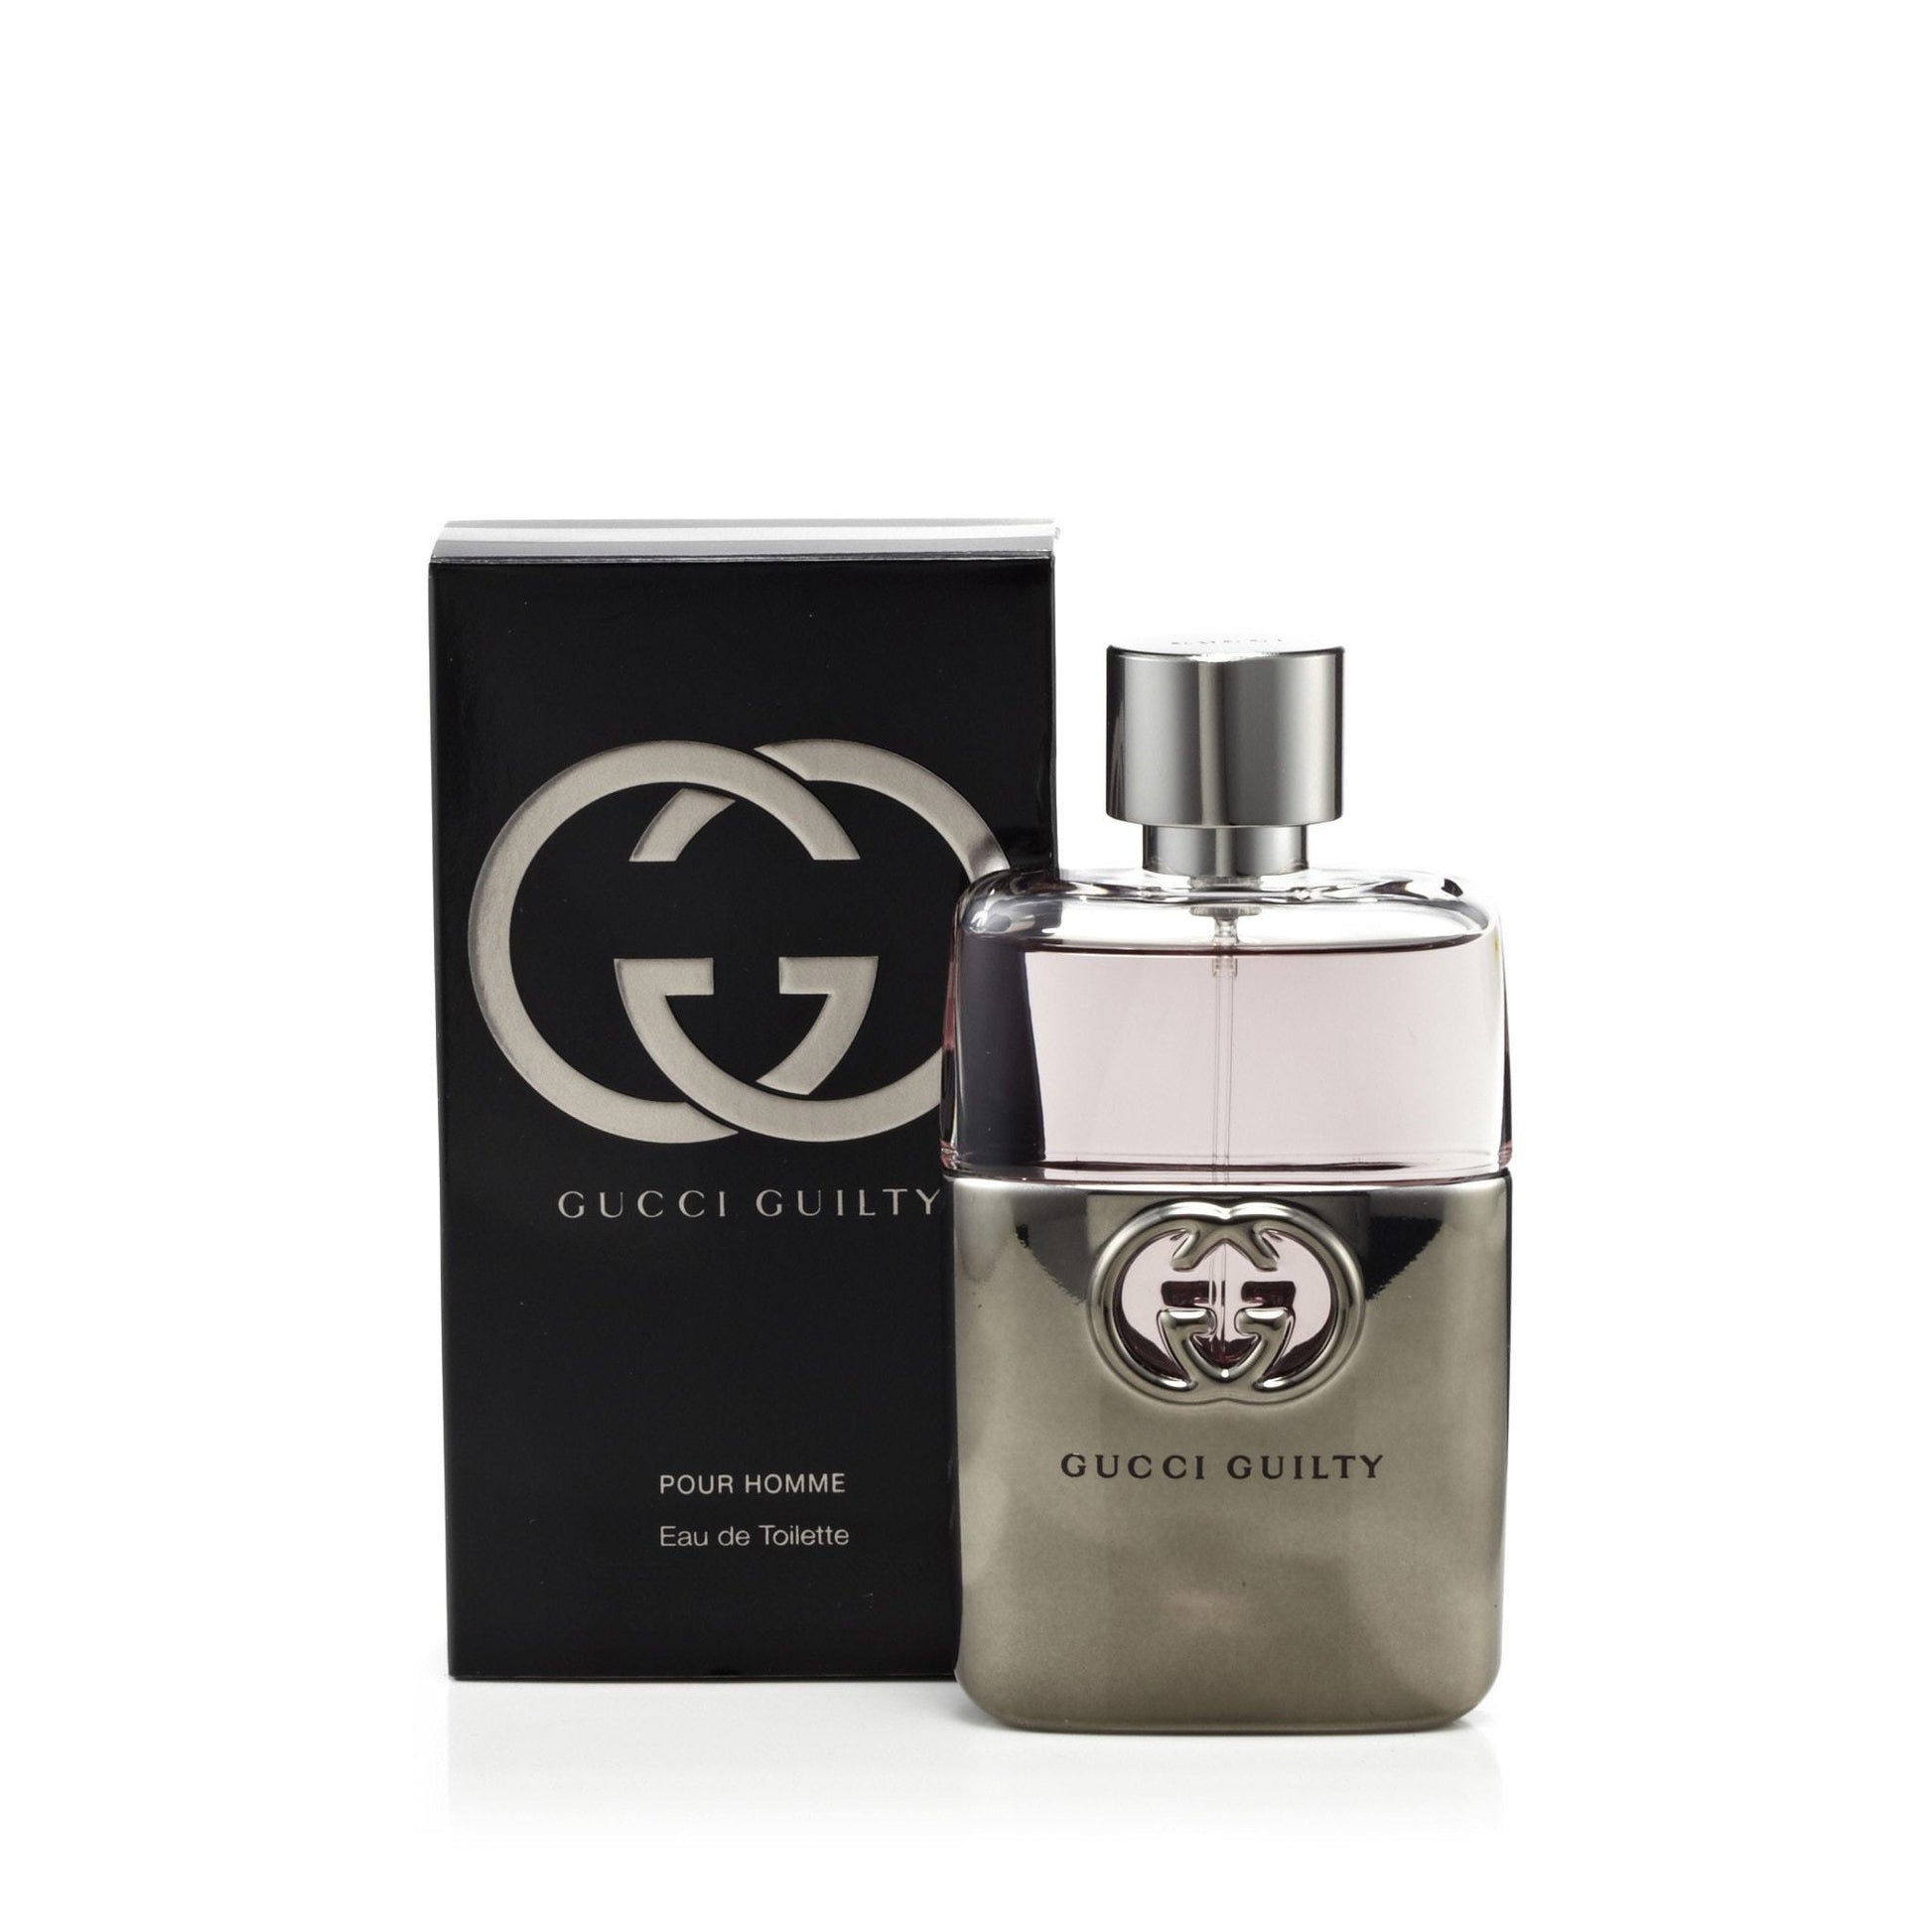 Spray Men Fragrance de for Toilette – Guilty Gucci Outlet Eau